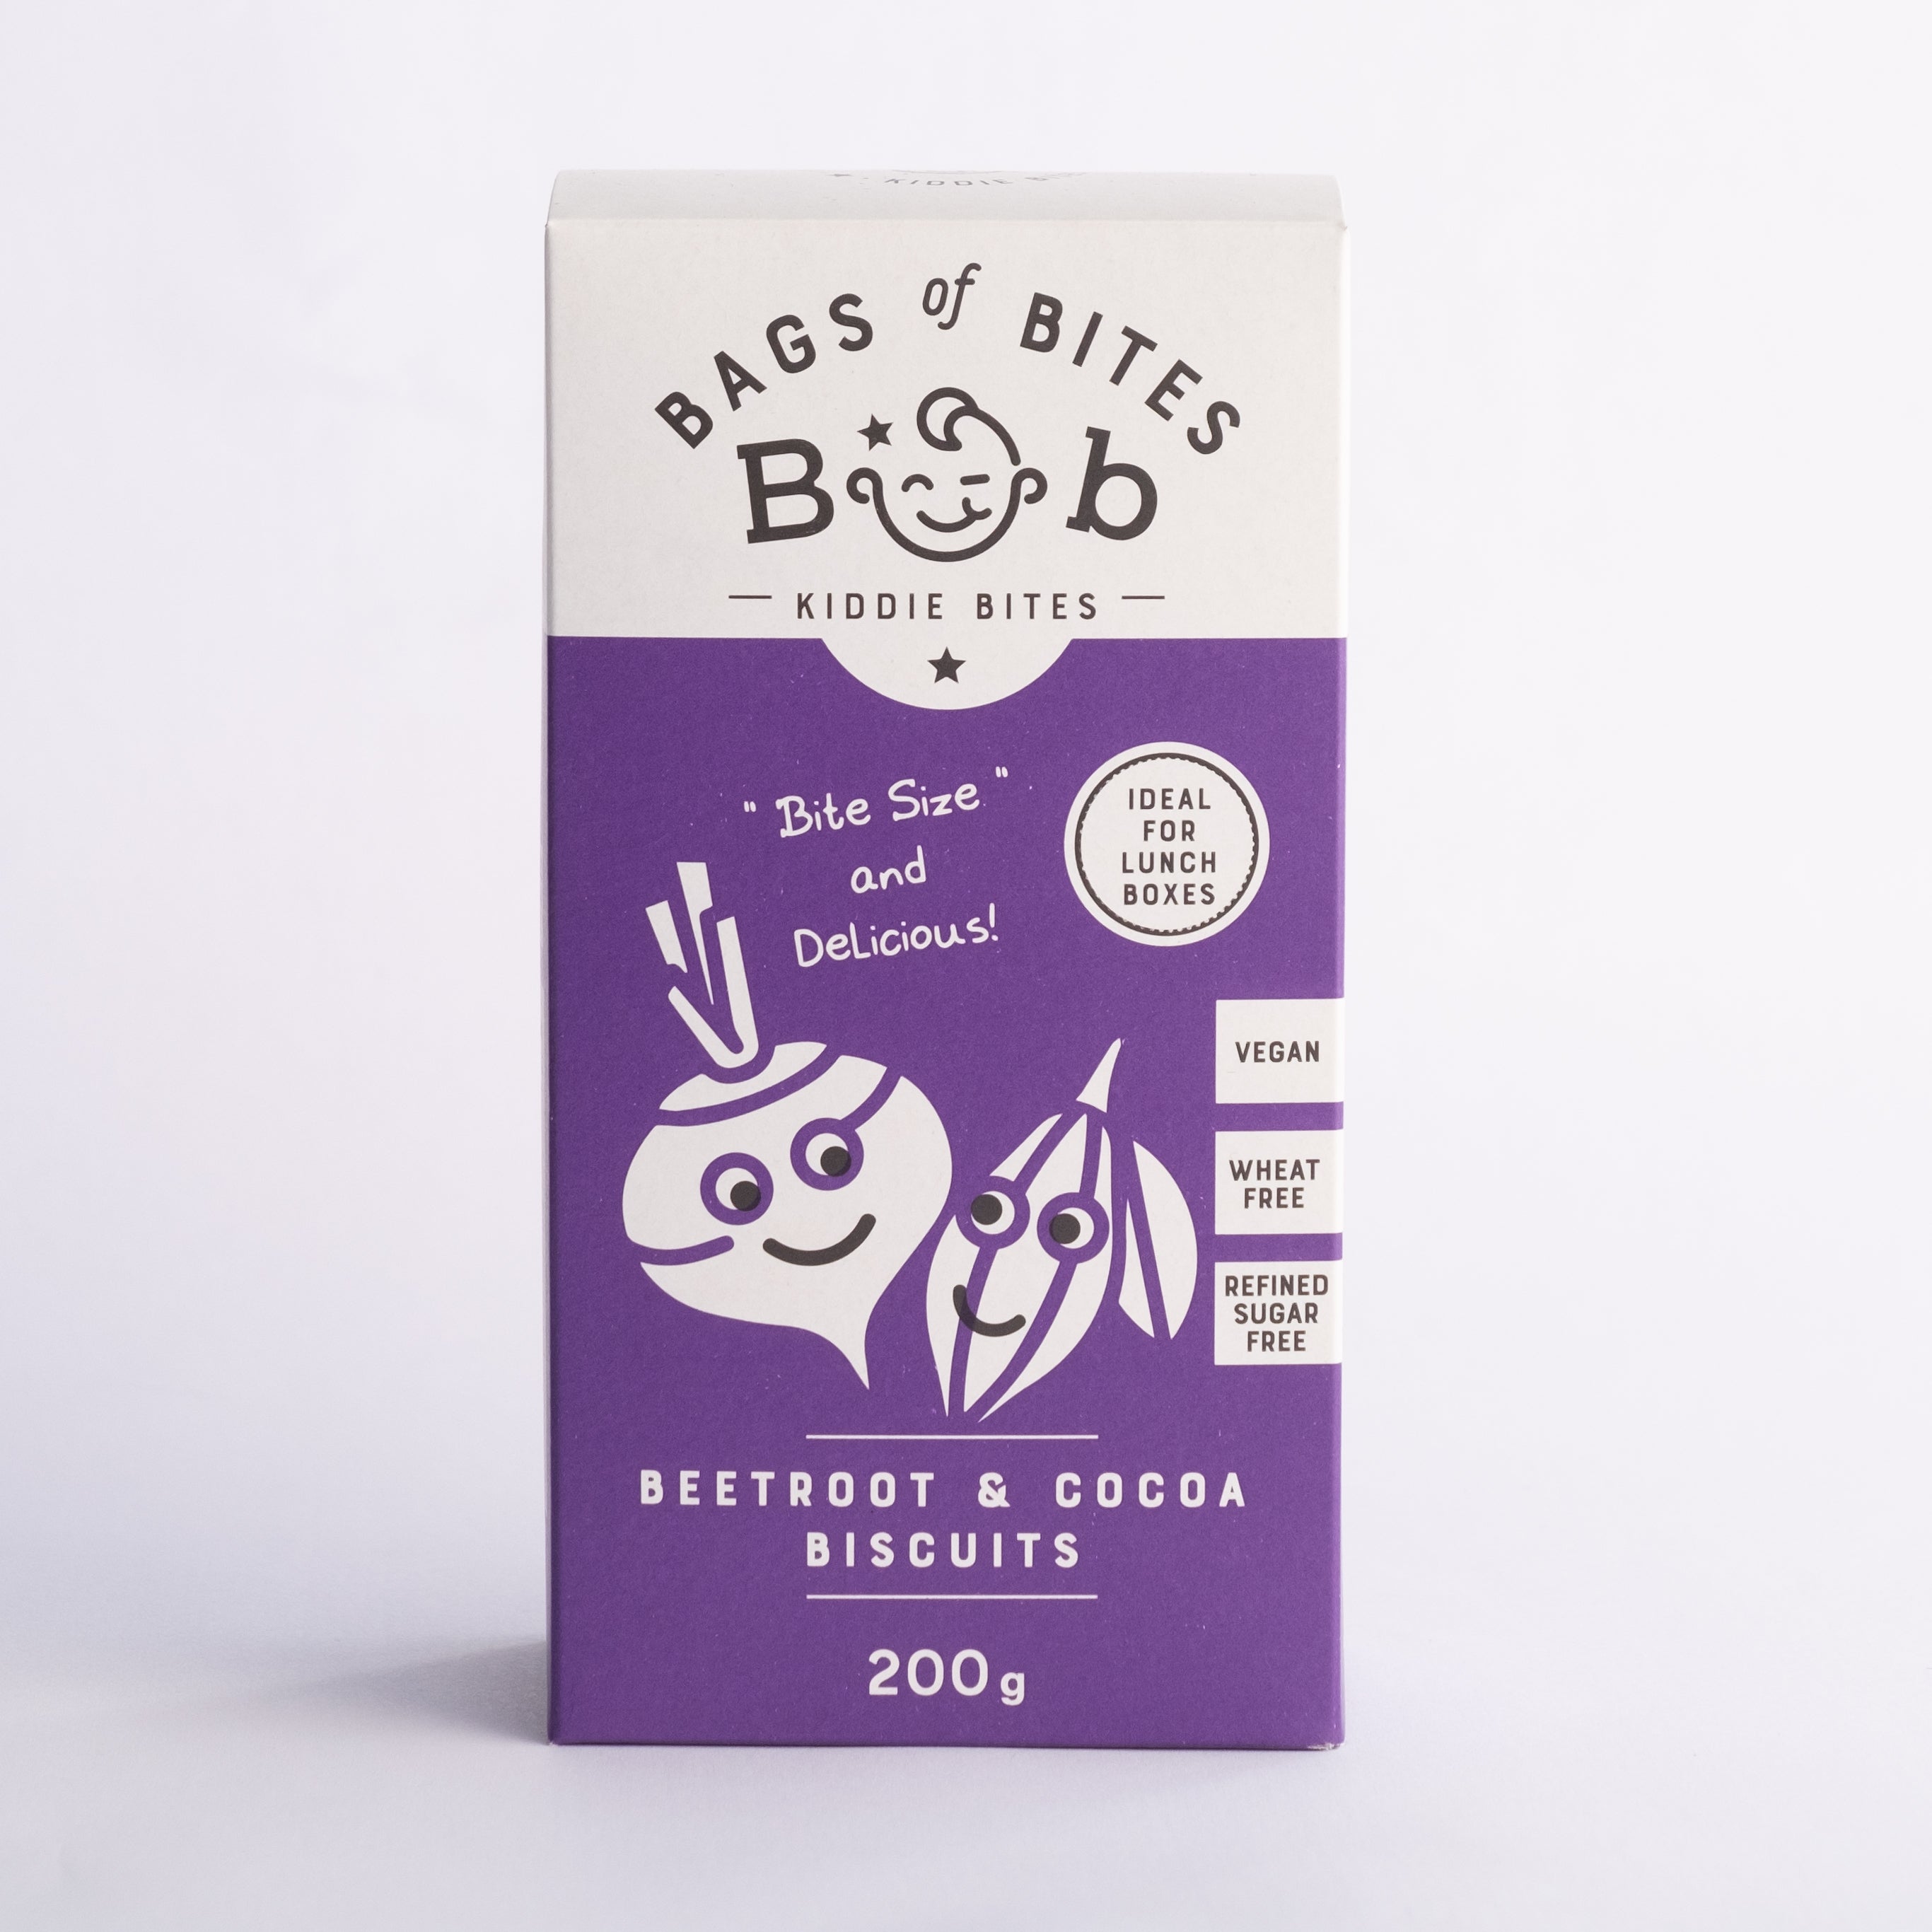 Bob Kiddies Bites - Beetroot & Cocoa Biscuits